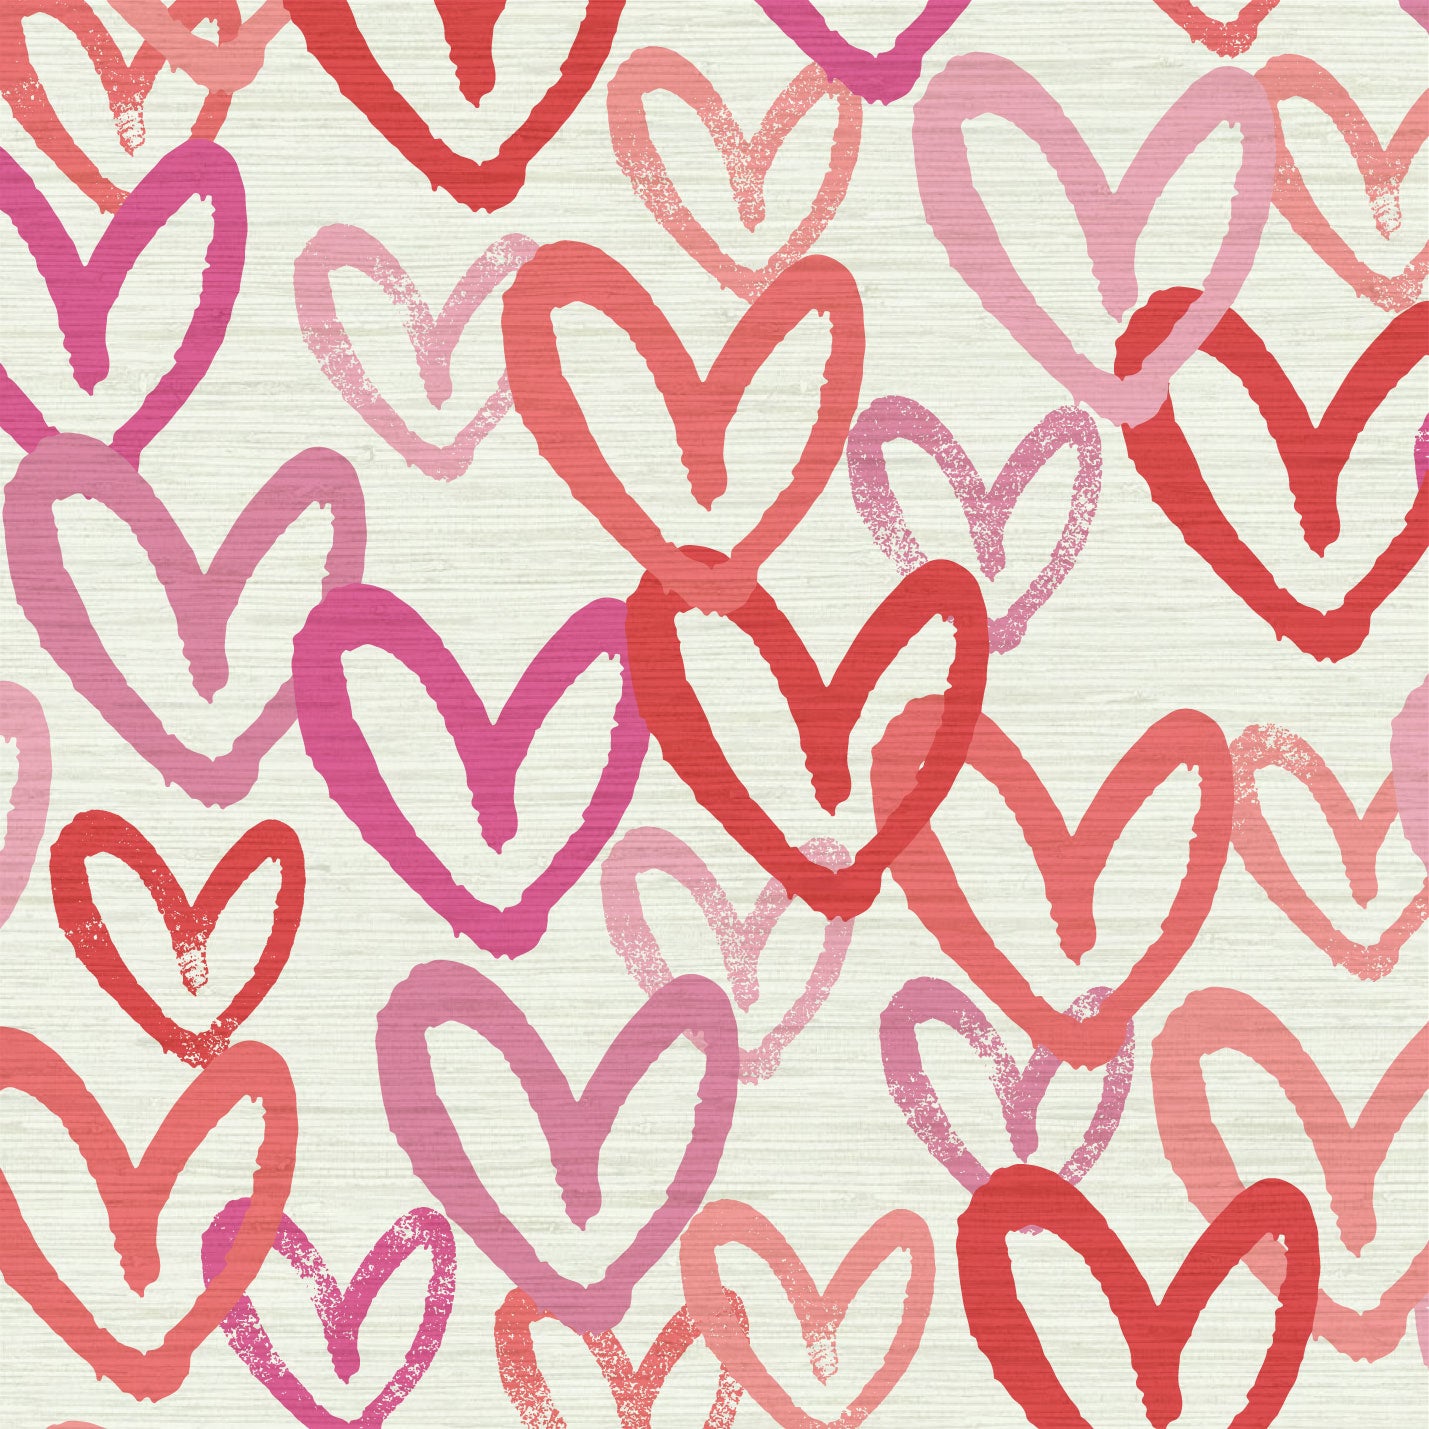 15 Happy hearts!!! ideas  heart wallpaper, happy heart